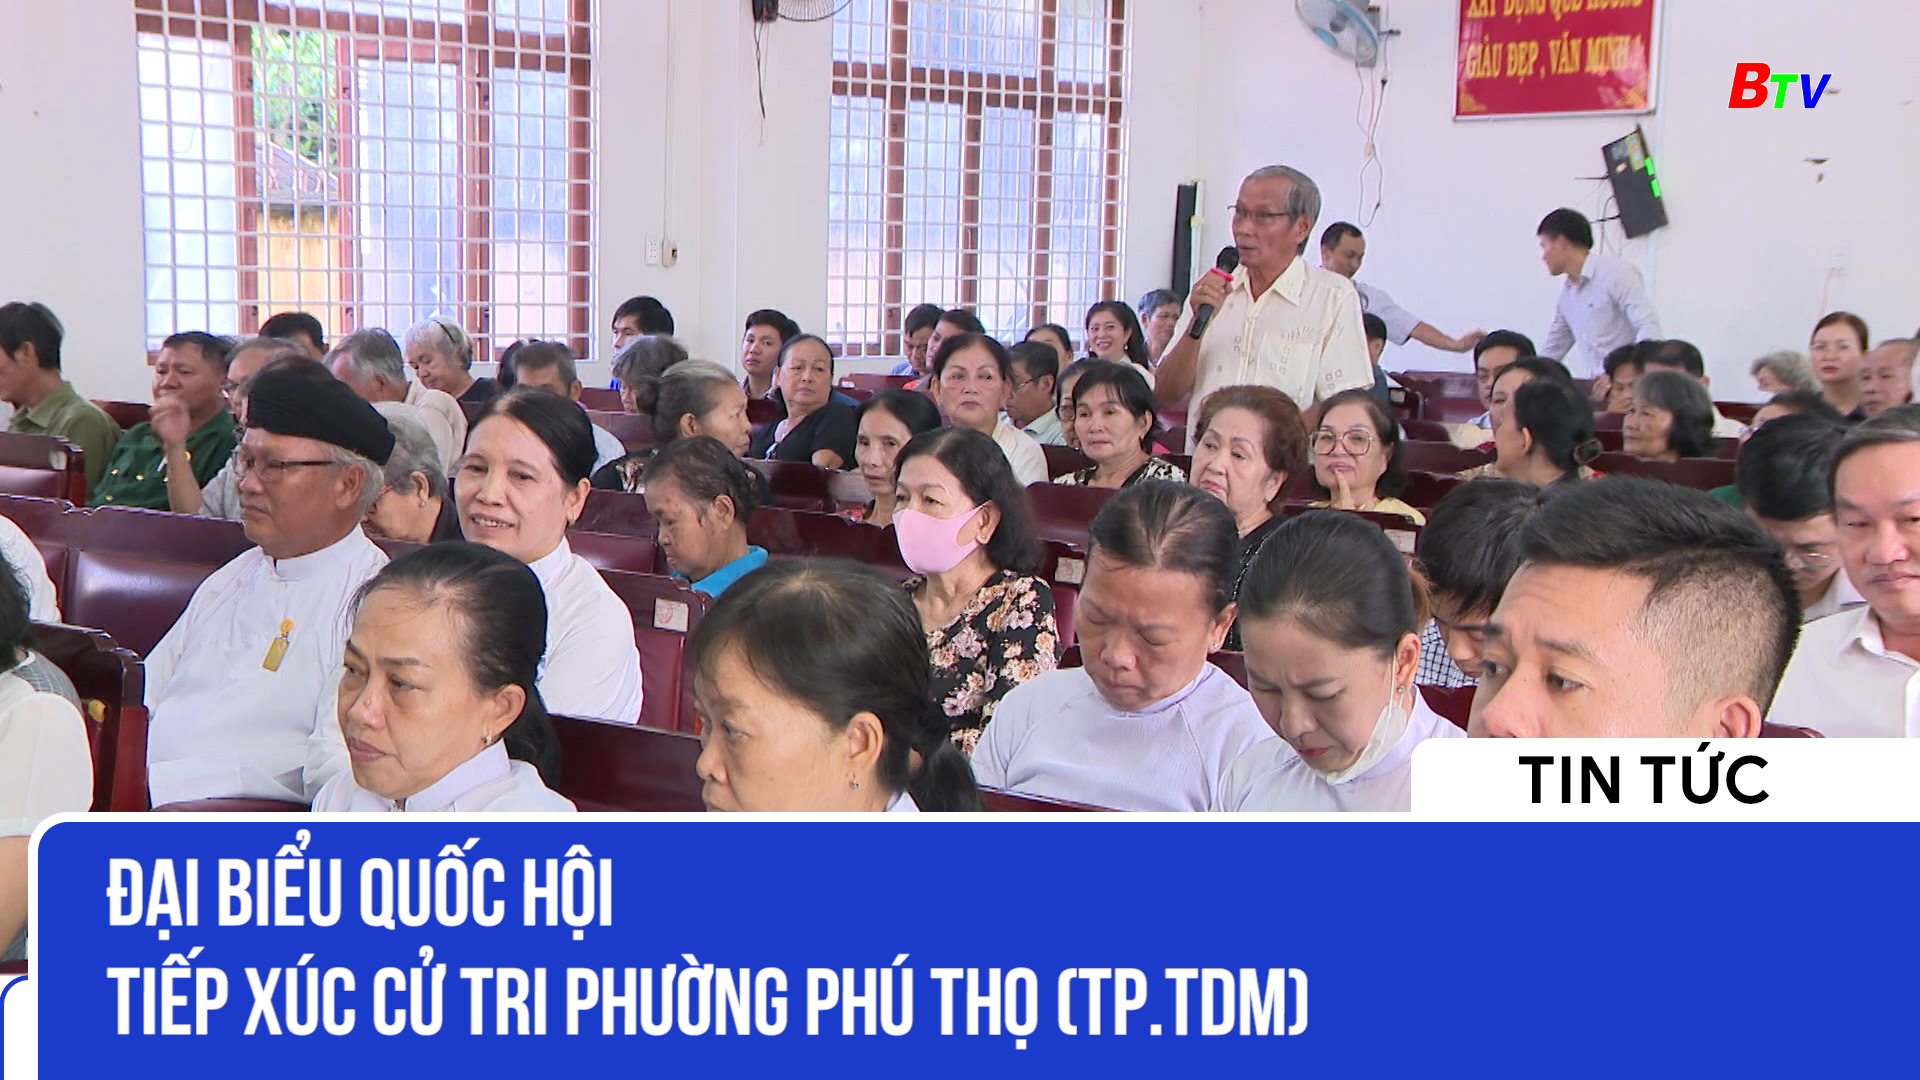 Đại biểu quốc hội tiếp xúc cử tri phường Phú Thọ (Tp.TDM)